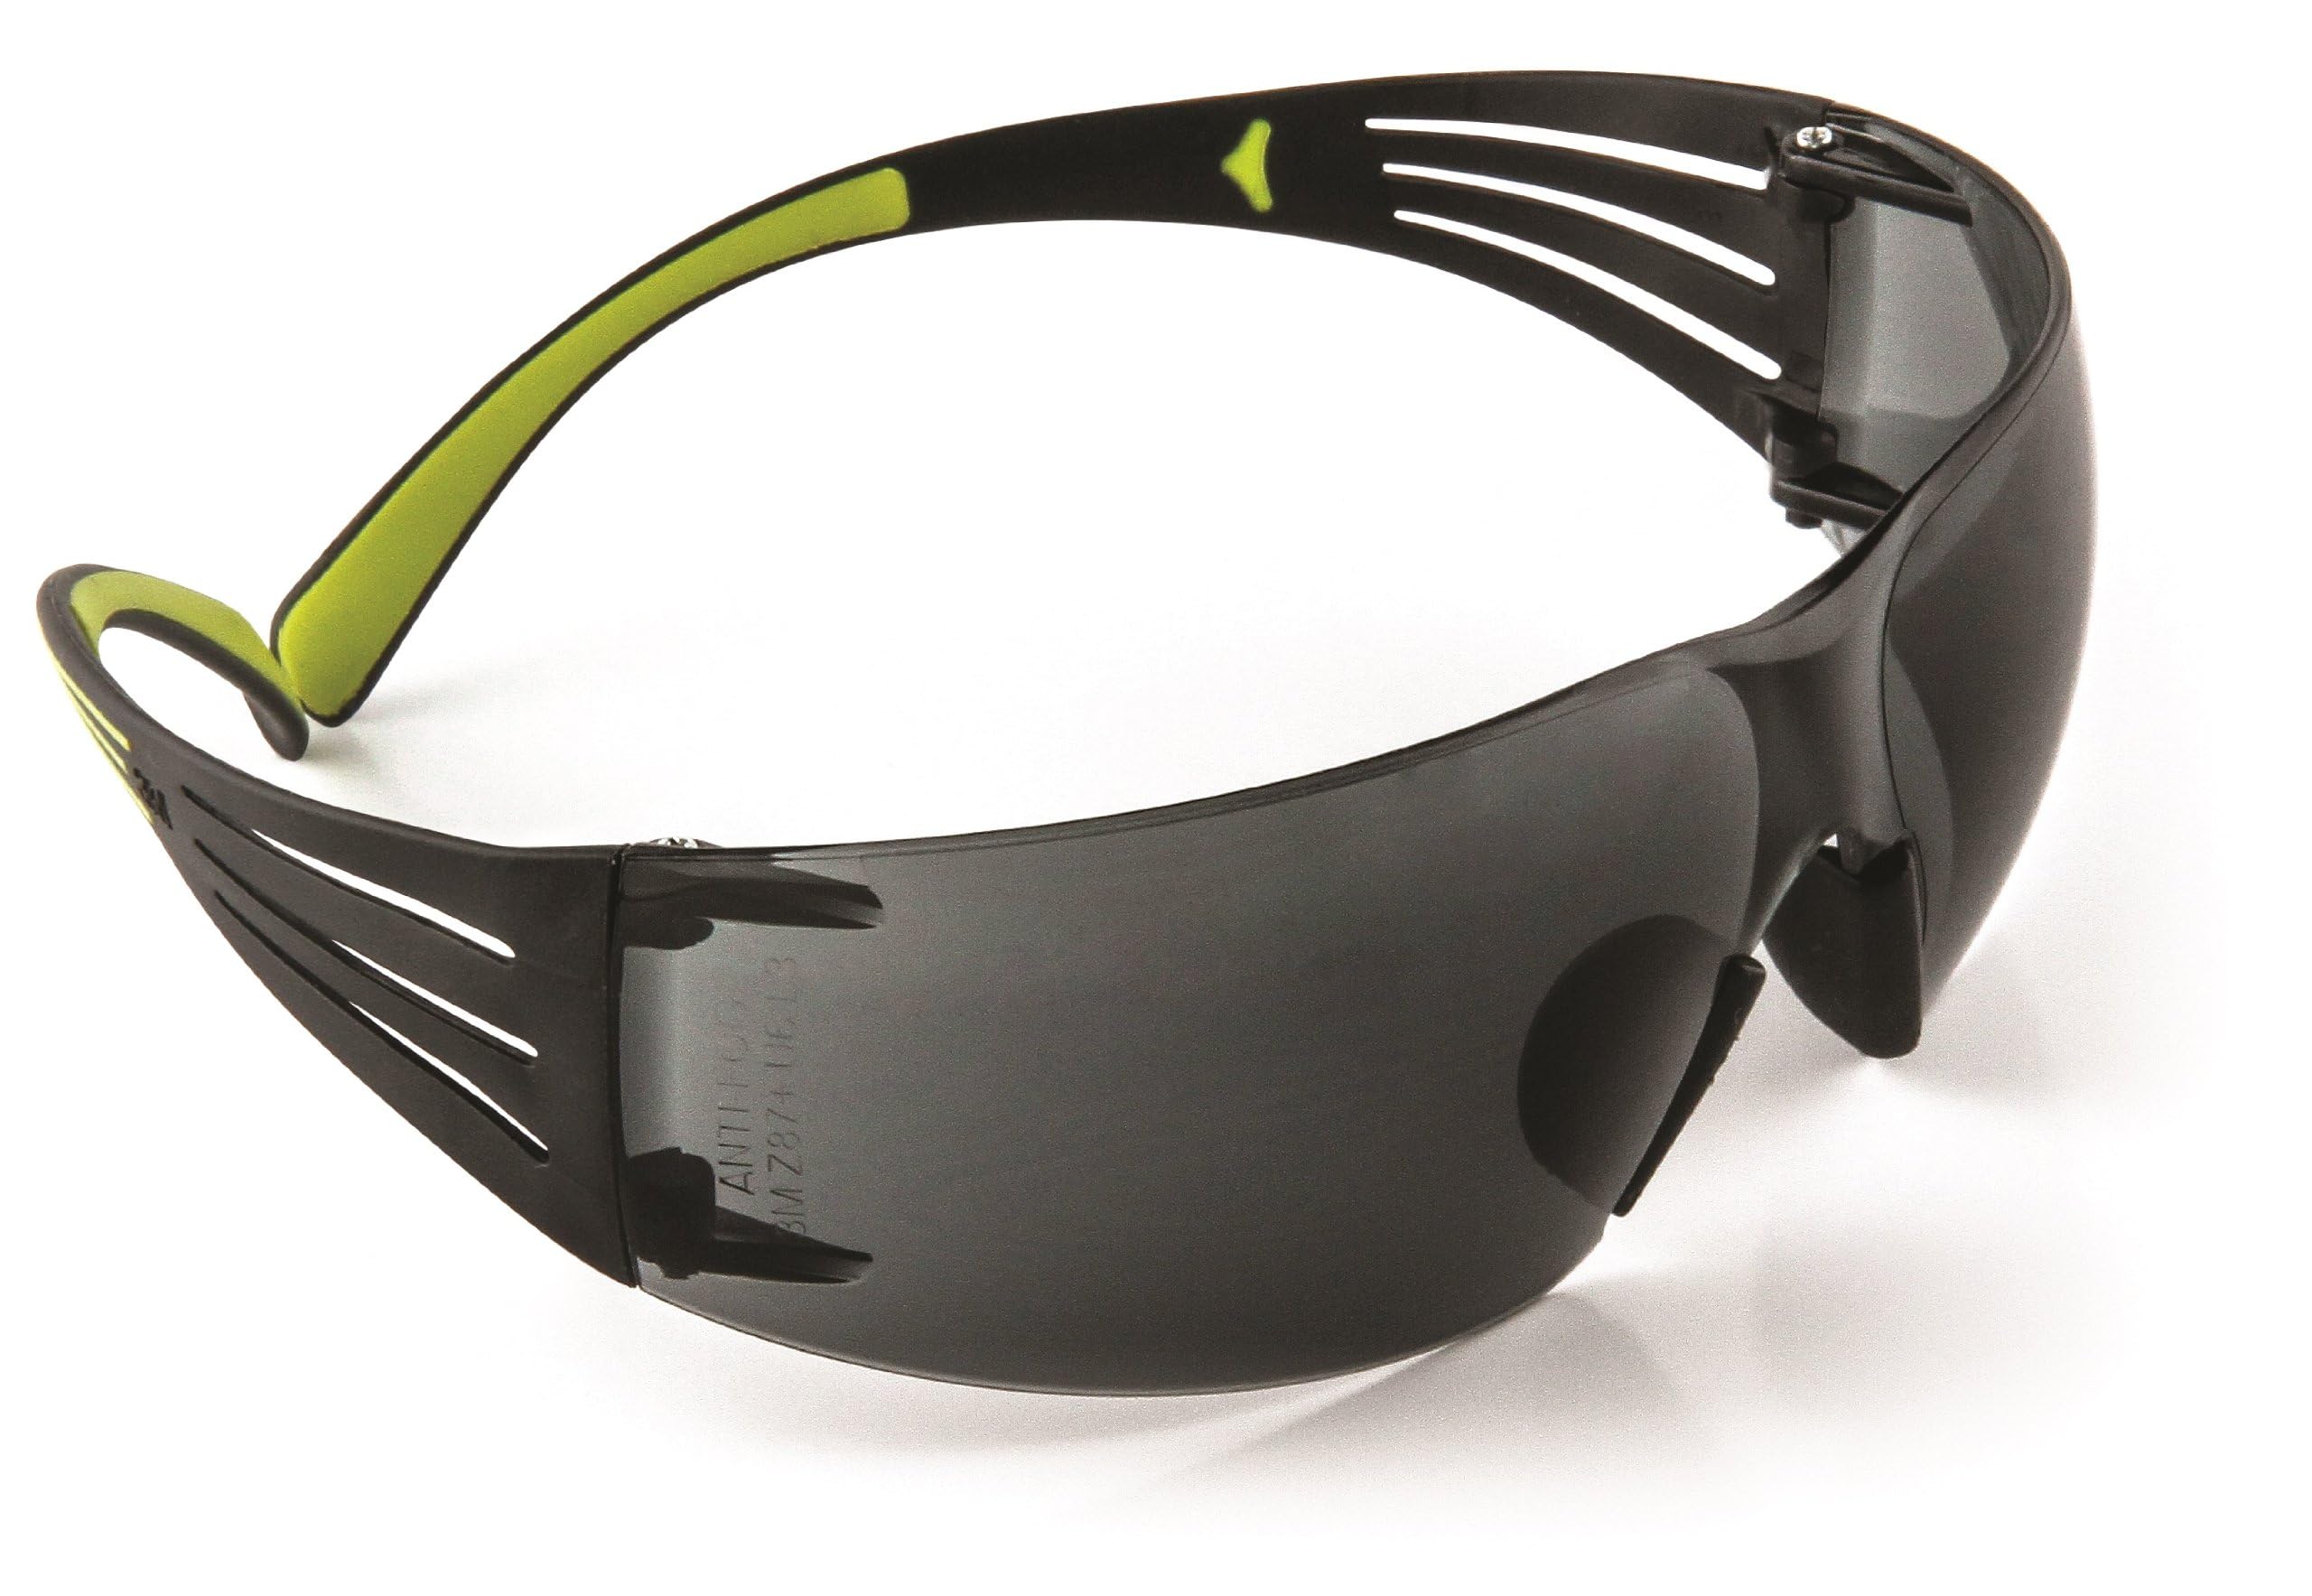 Amazon: 3M SecureFit Protective Eyewear Shaded / Sunglasses $5.68